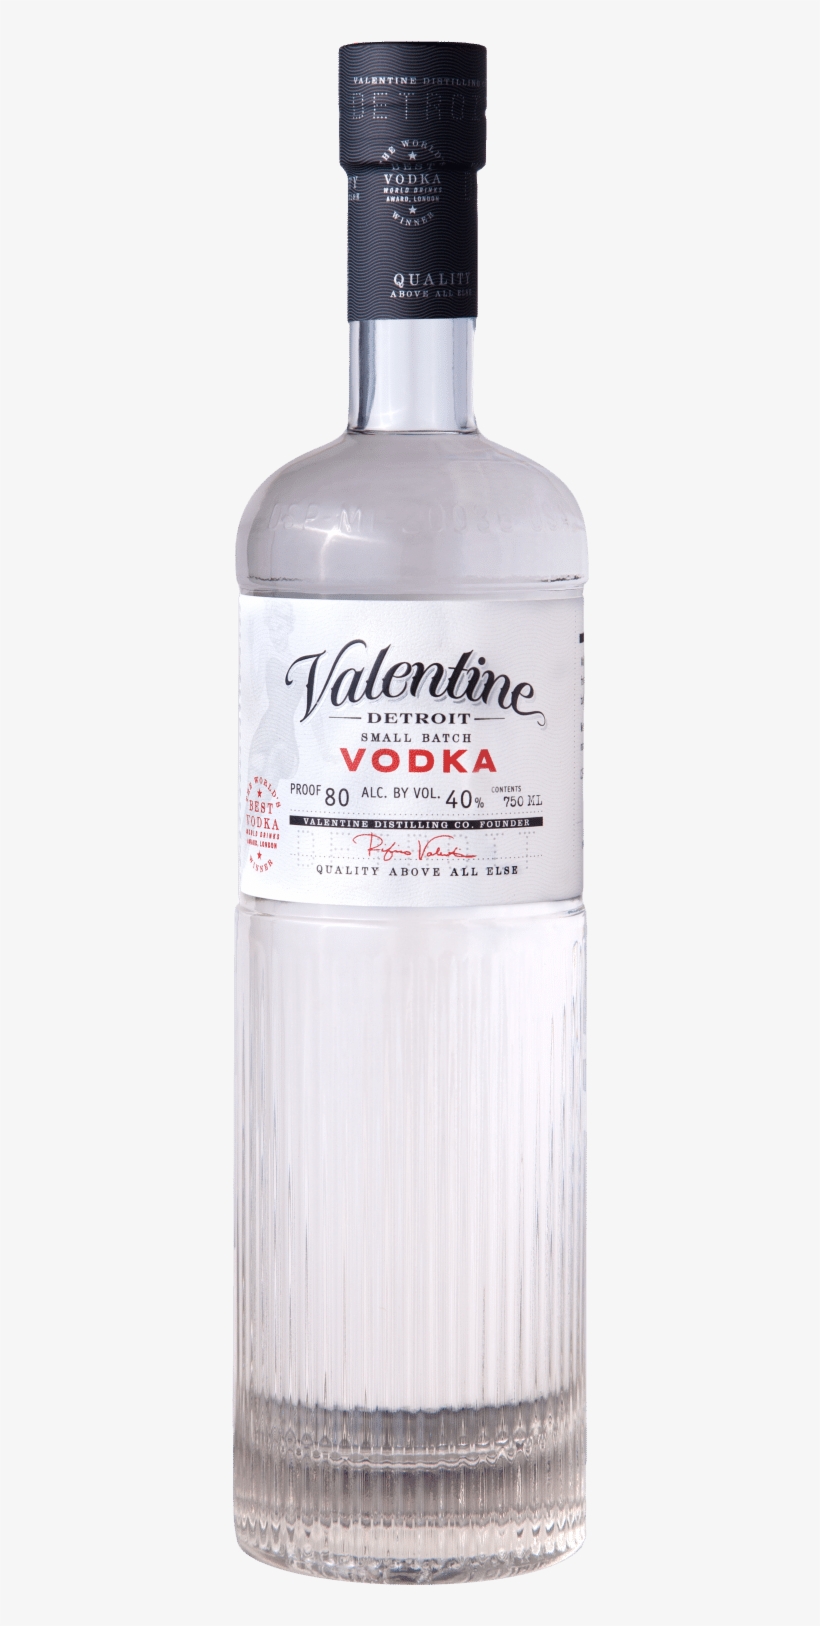 Releases New Valentine Vodka Bottle - Vodka Detroit, transparent png #2053333